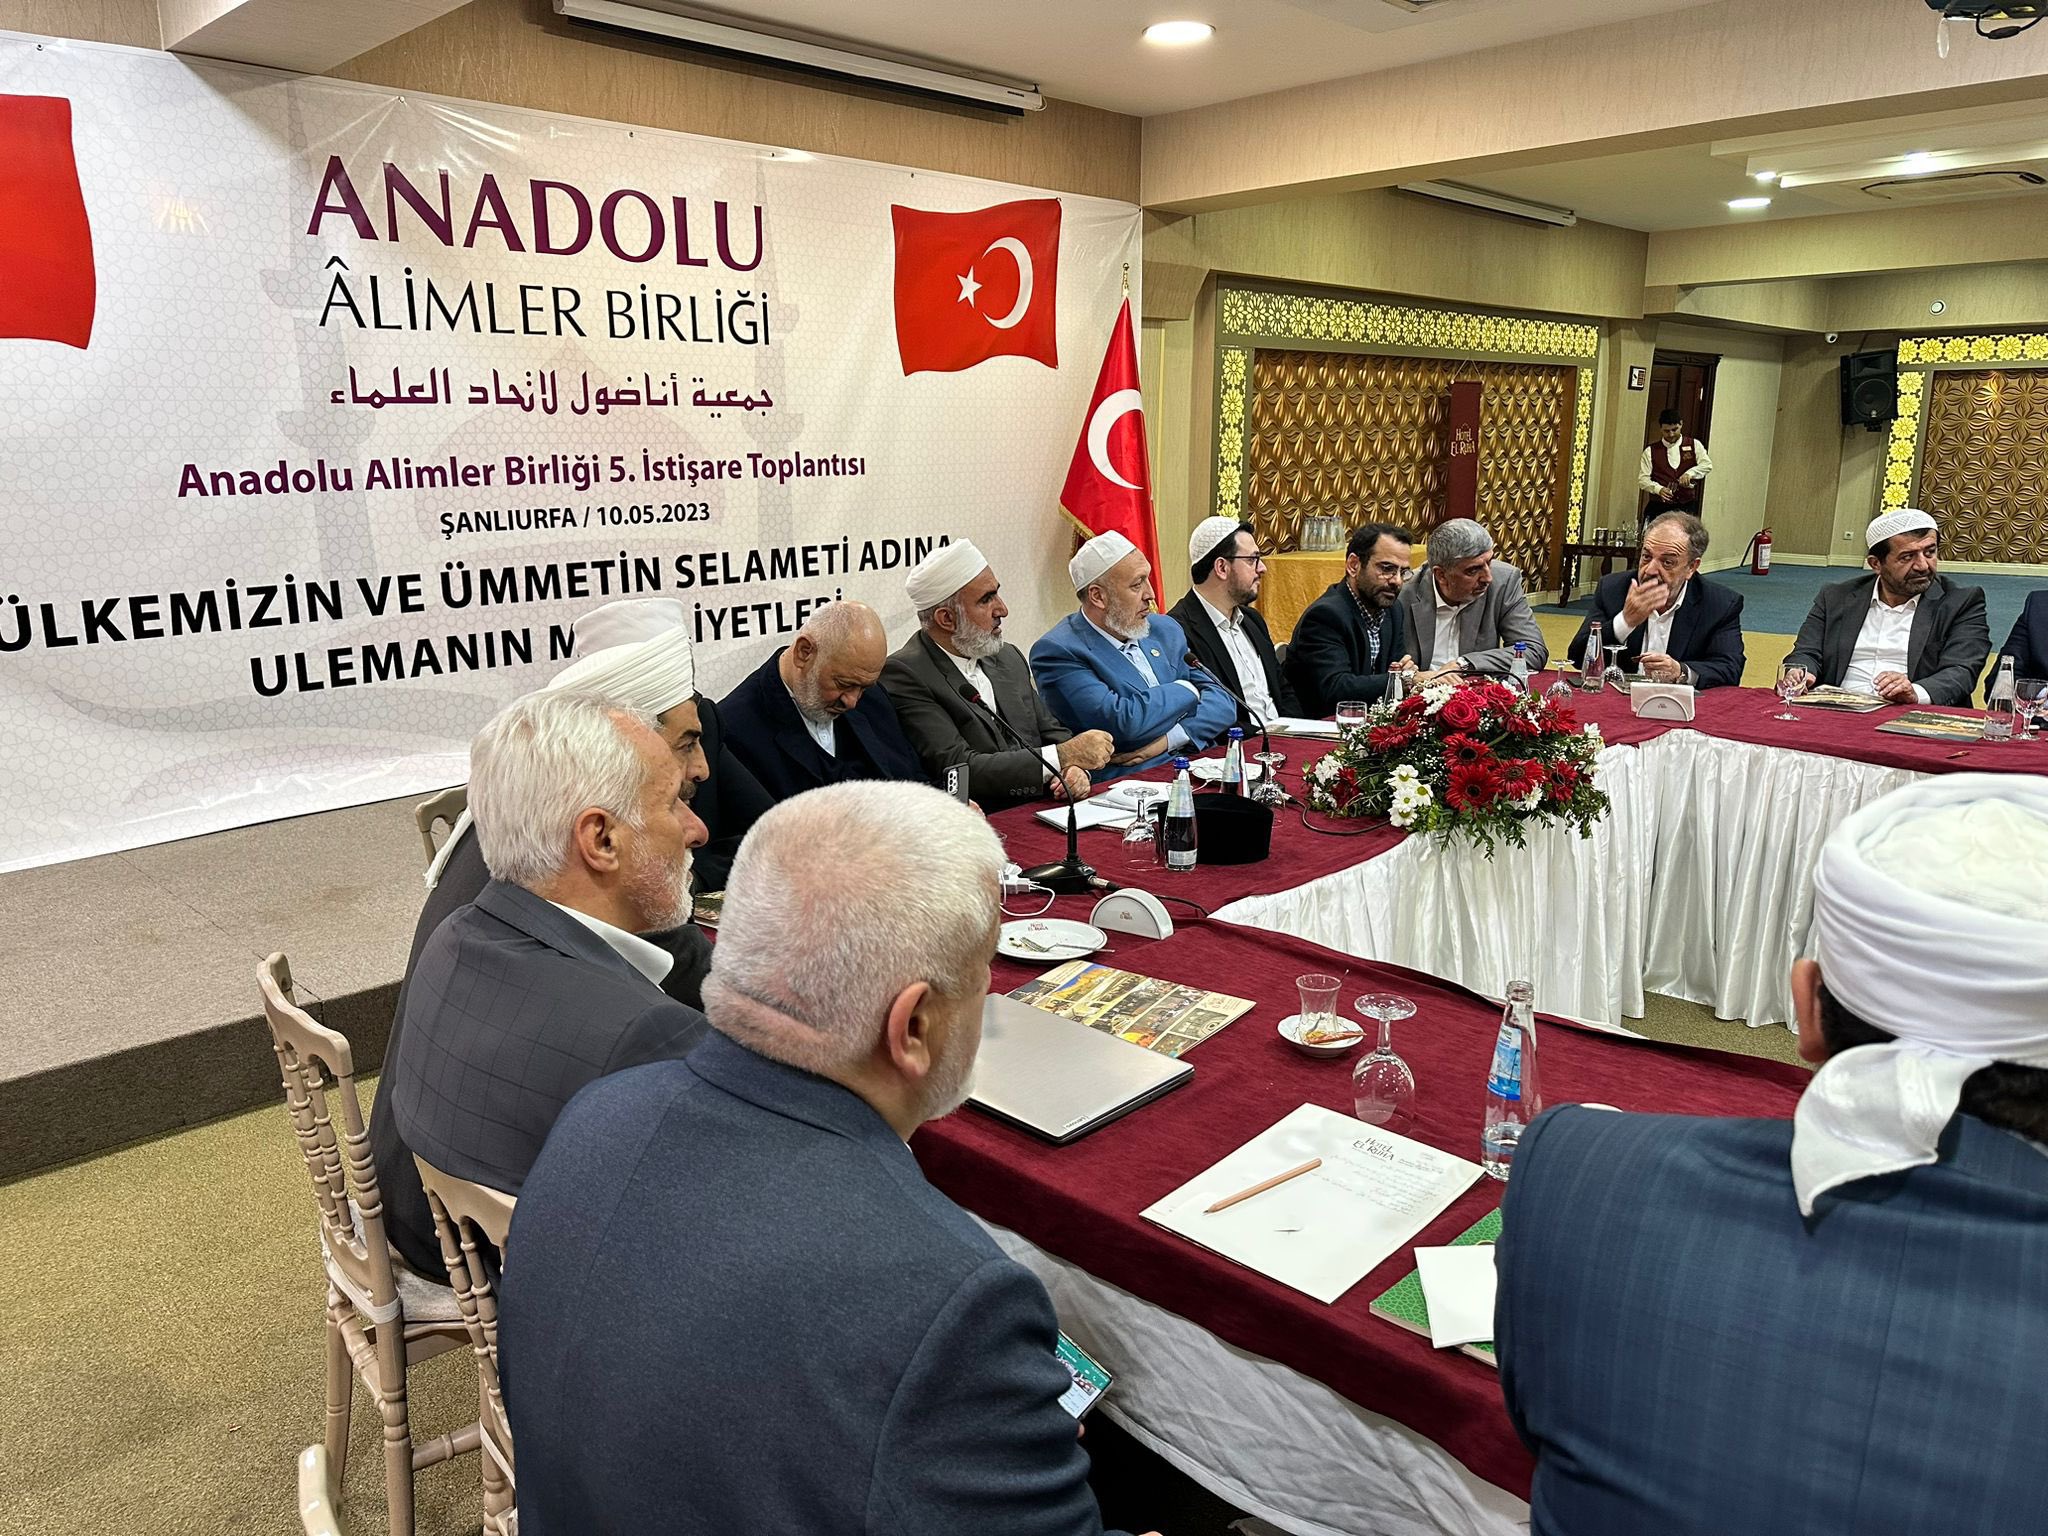 Anadolu Alimler Birliği seçim kararını açıkladı!